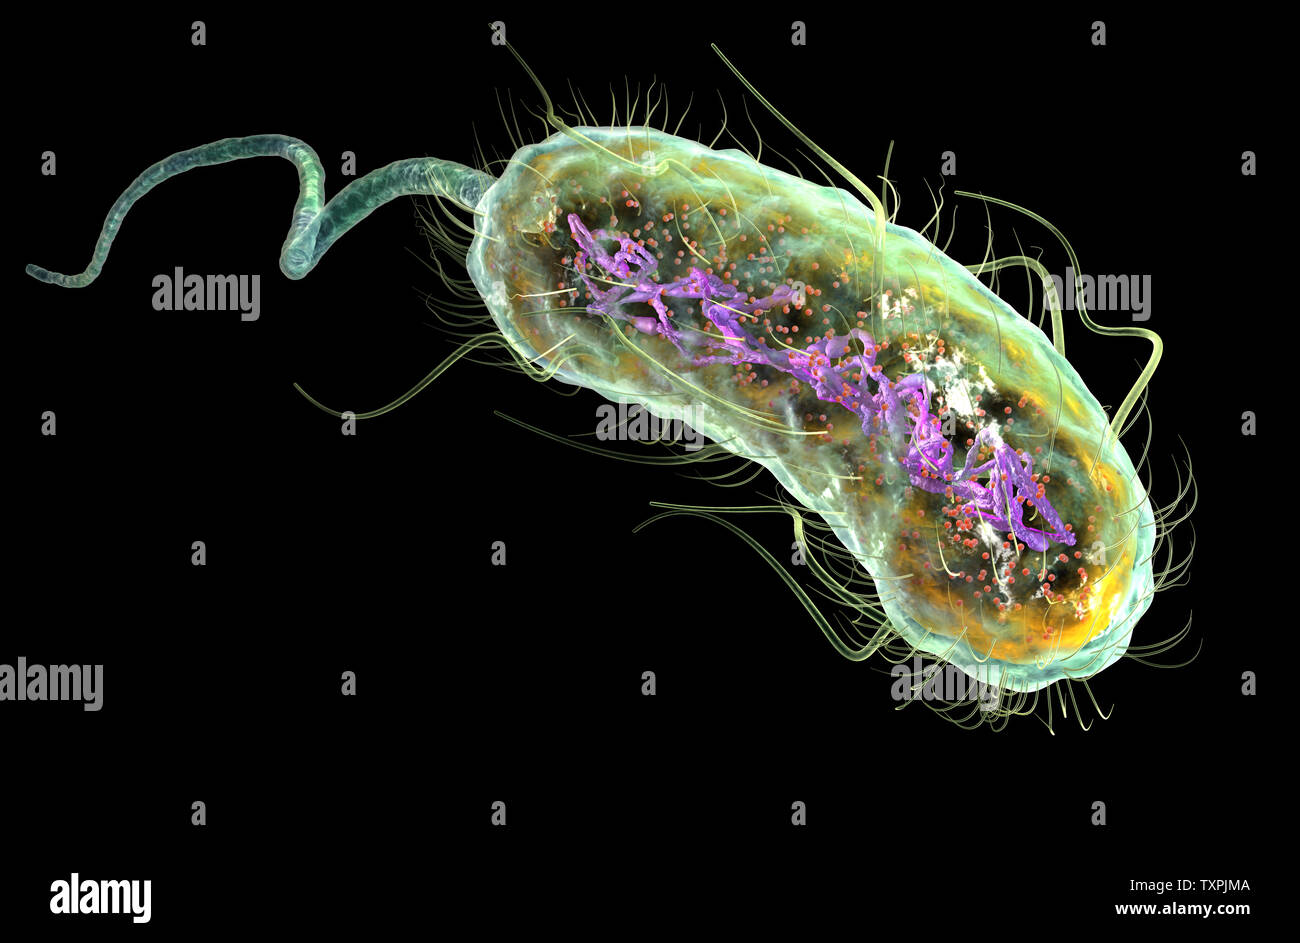 Ilustración que muestra la bacteria Escherichia coli (E. coli) con al nucleótido (ADN), ribosomas, citoplasma, flagelo y fimbrias Foto de stock